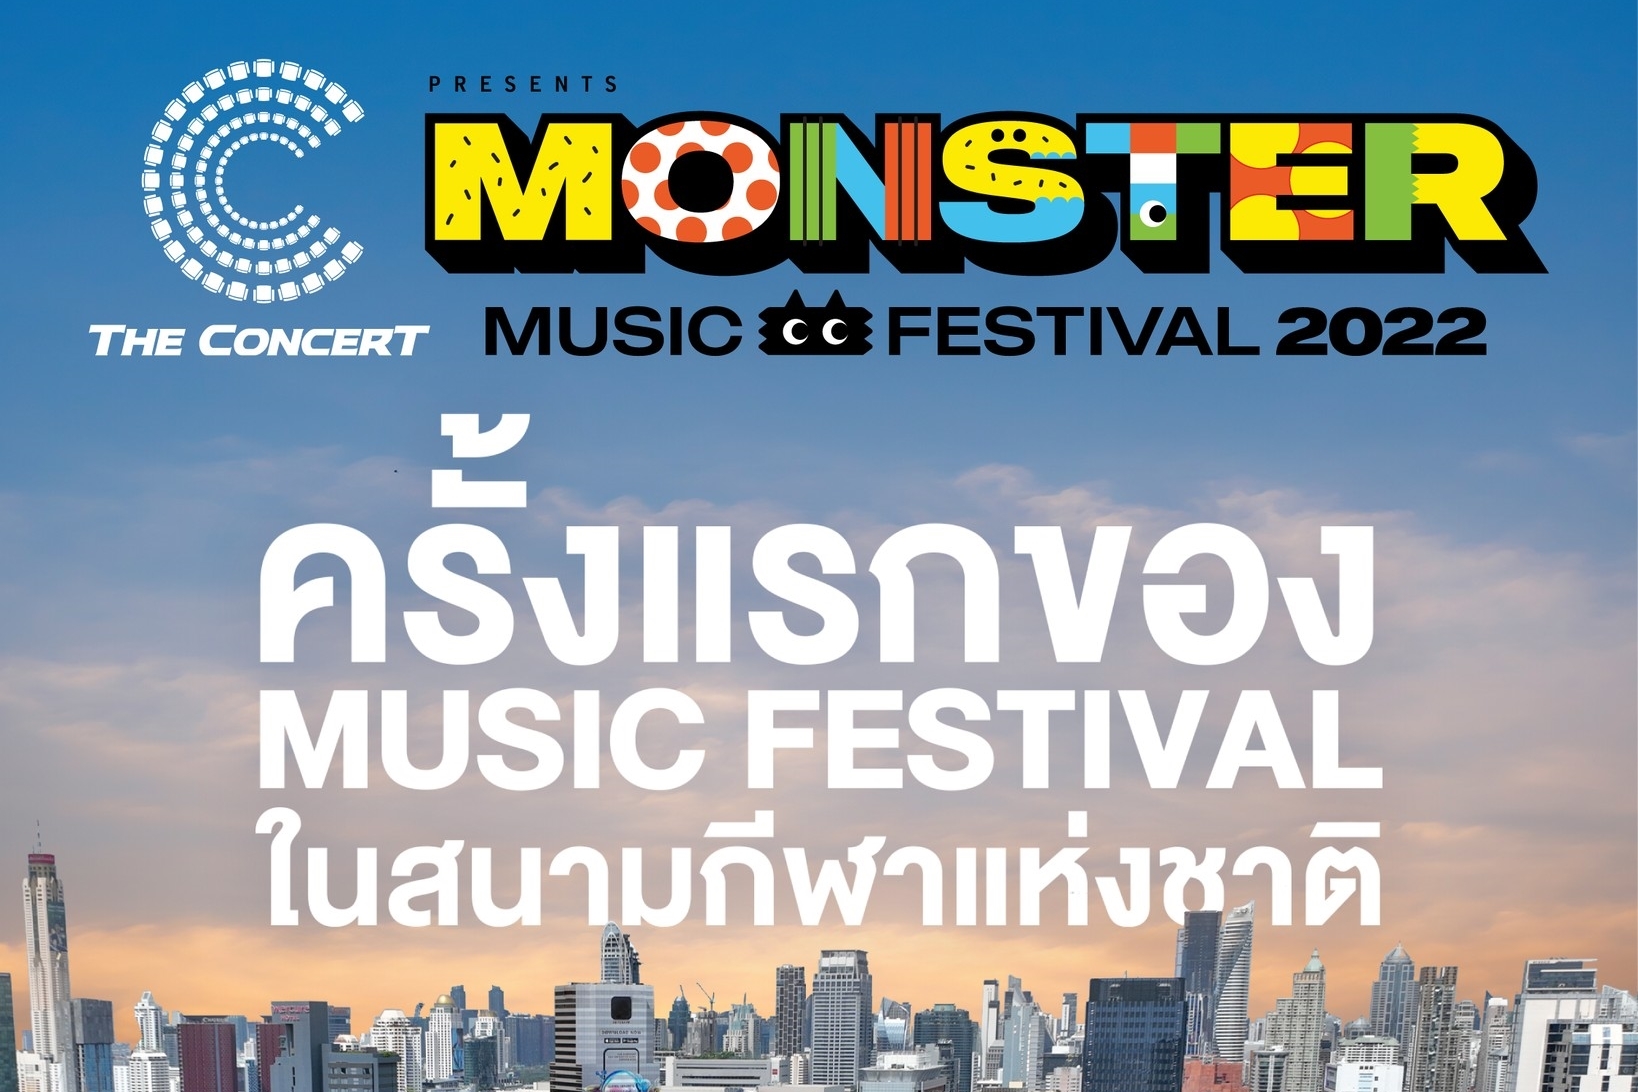 เขย่าวงการมิวสิคเฟสติวัล “GMM SHOW” ส่งเทศกาลดนตรีใจกลางกรุงเทพ “The Concert Application Presents Monster Music Festival"